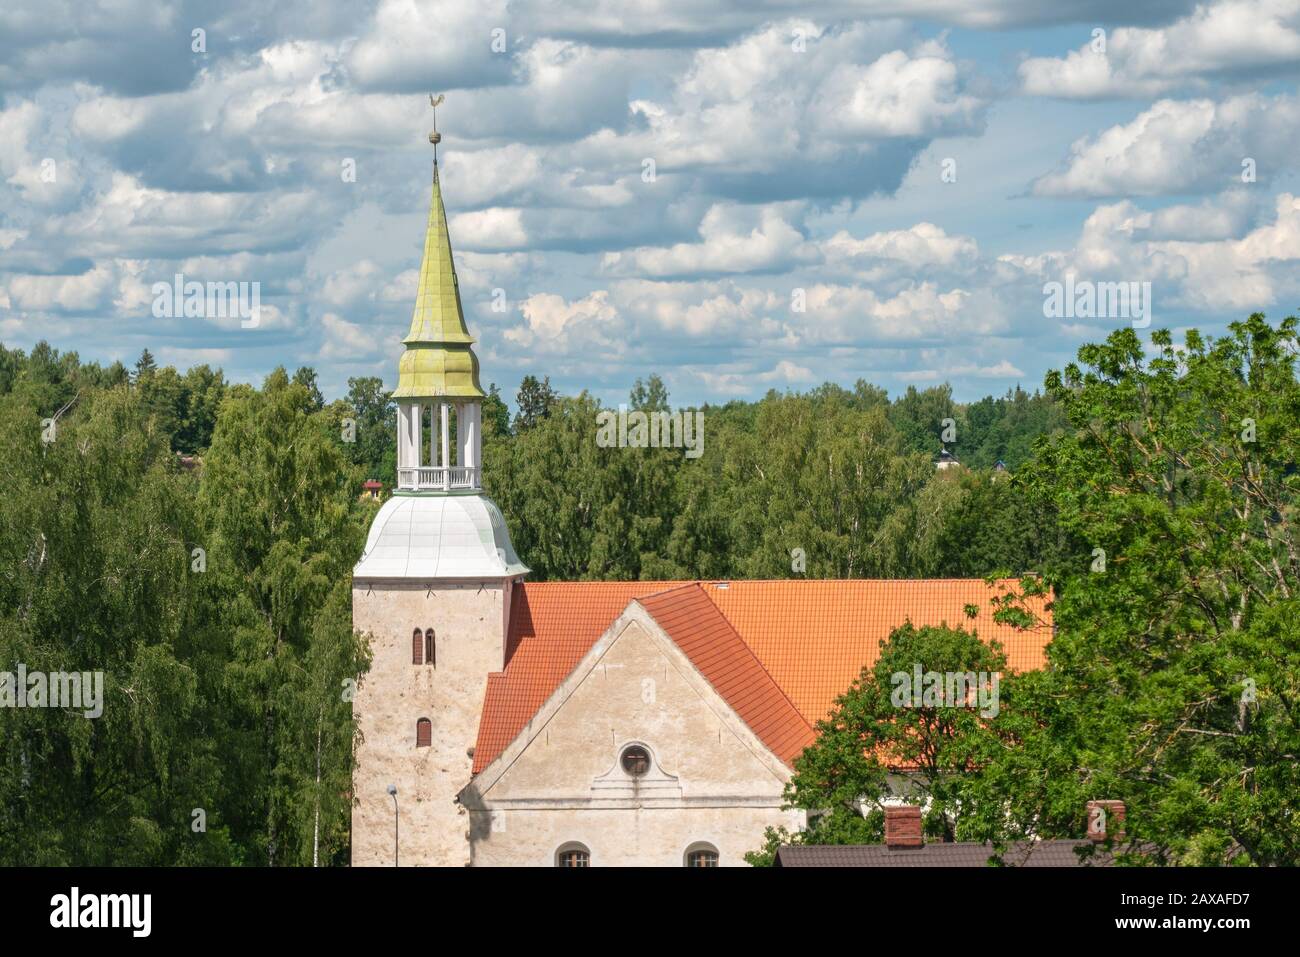 Historische Kirche. Mittelalterlichen Dom Über Treetops. Blick Auf Den Wald. Lutherkirche in Rauna Lettland. Das ursprüngliche Mittelaltergebäude wurde 1262 errichtet. Stockfoto